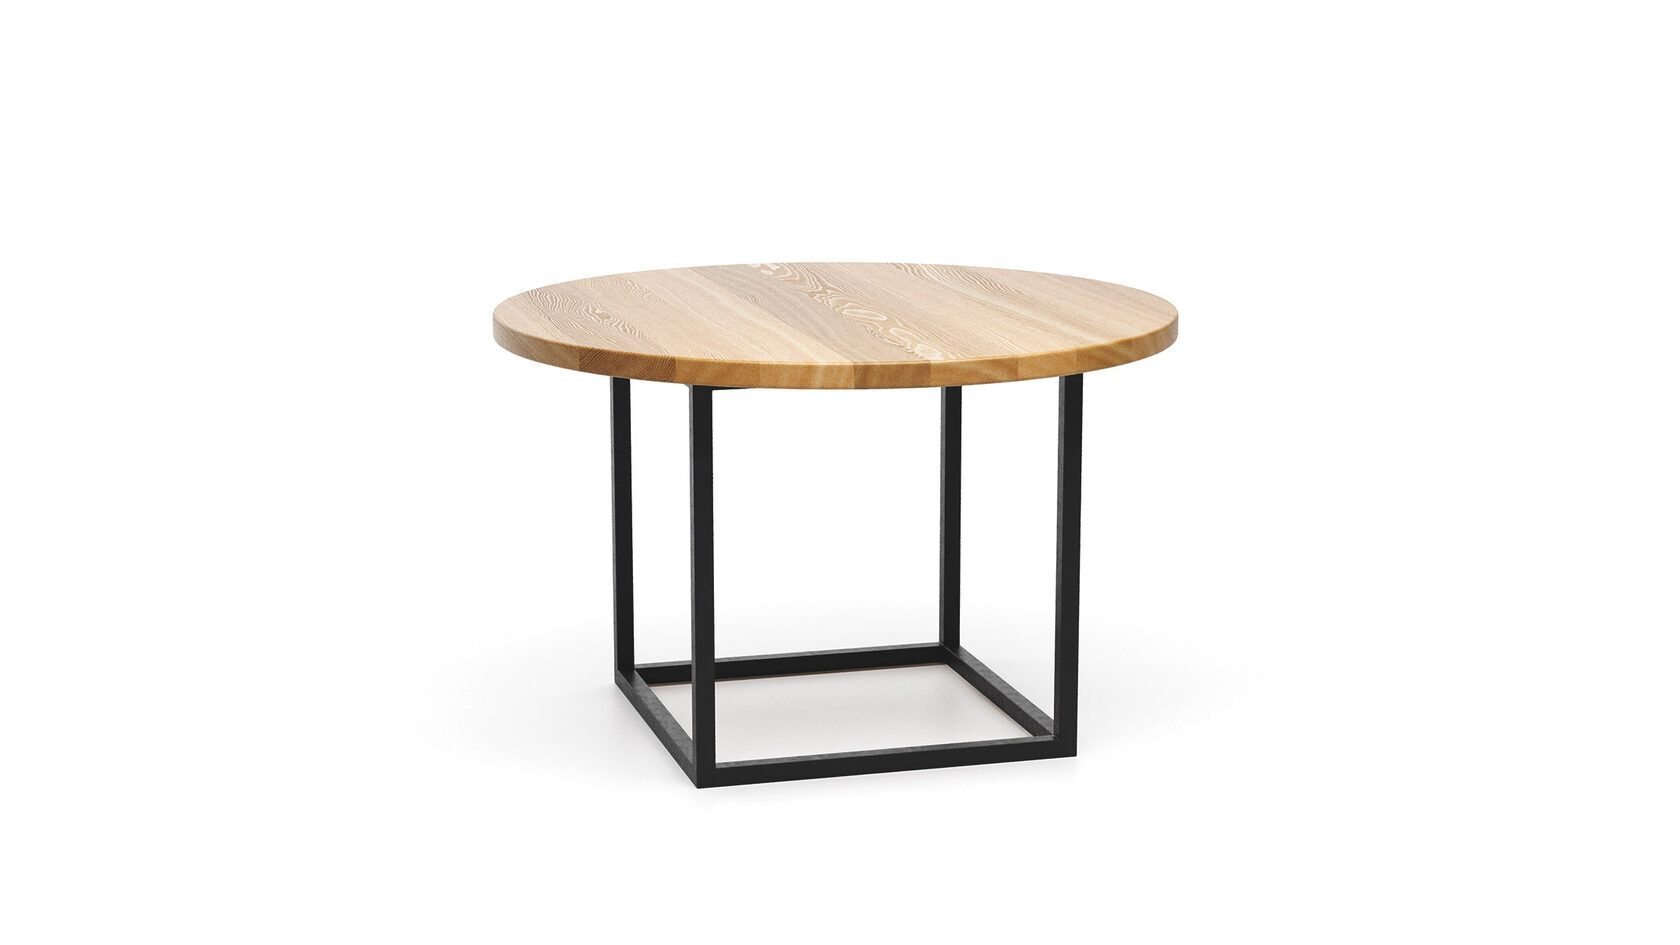 Современный стол Гиттан в стиле лофт ▪ модель loftab018 ▪ столешница из массива дерева ▪ вид сверху